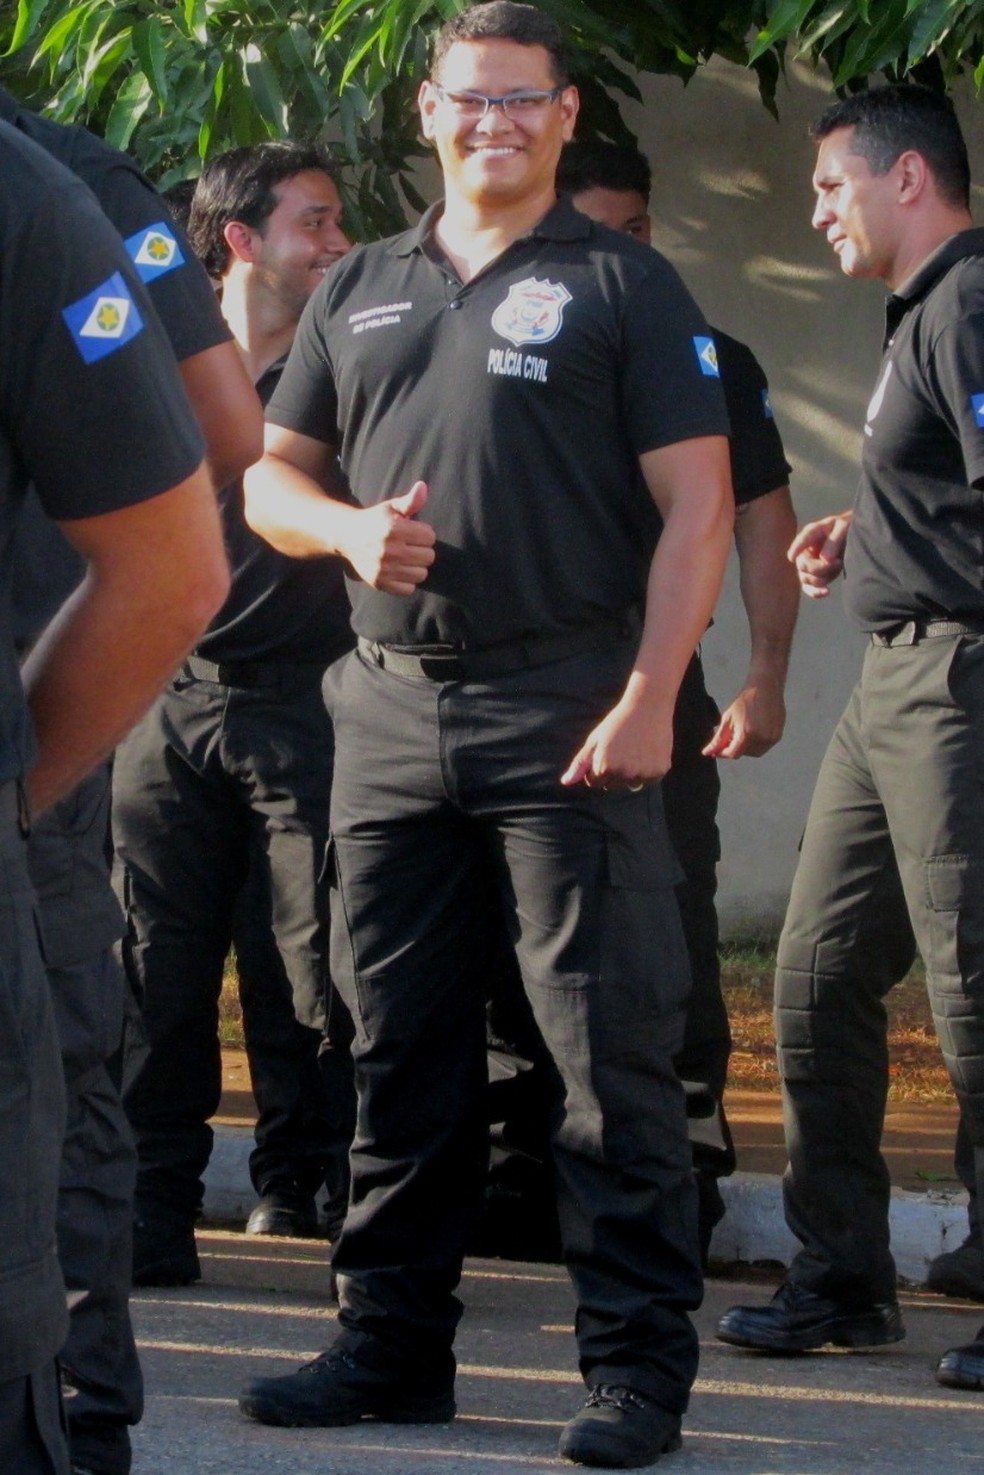 Roosevelt San Martin, de 40 anos, é policial civil de Mato Grosso — Foto: Arquivo pessoal